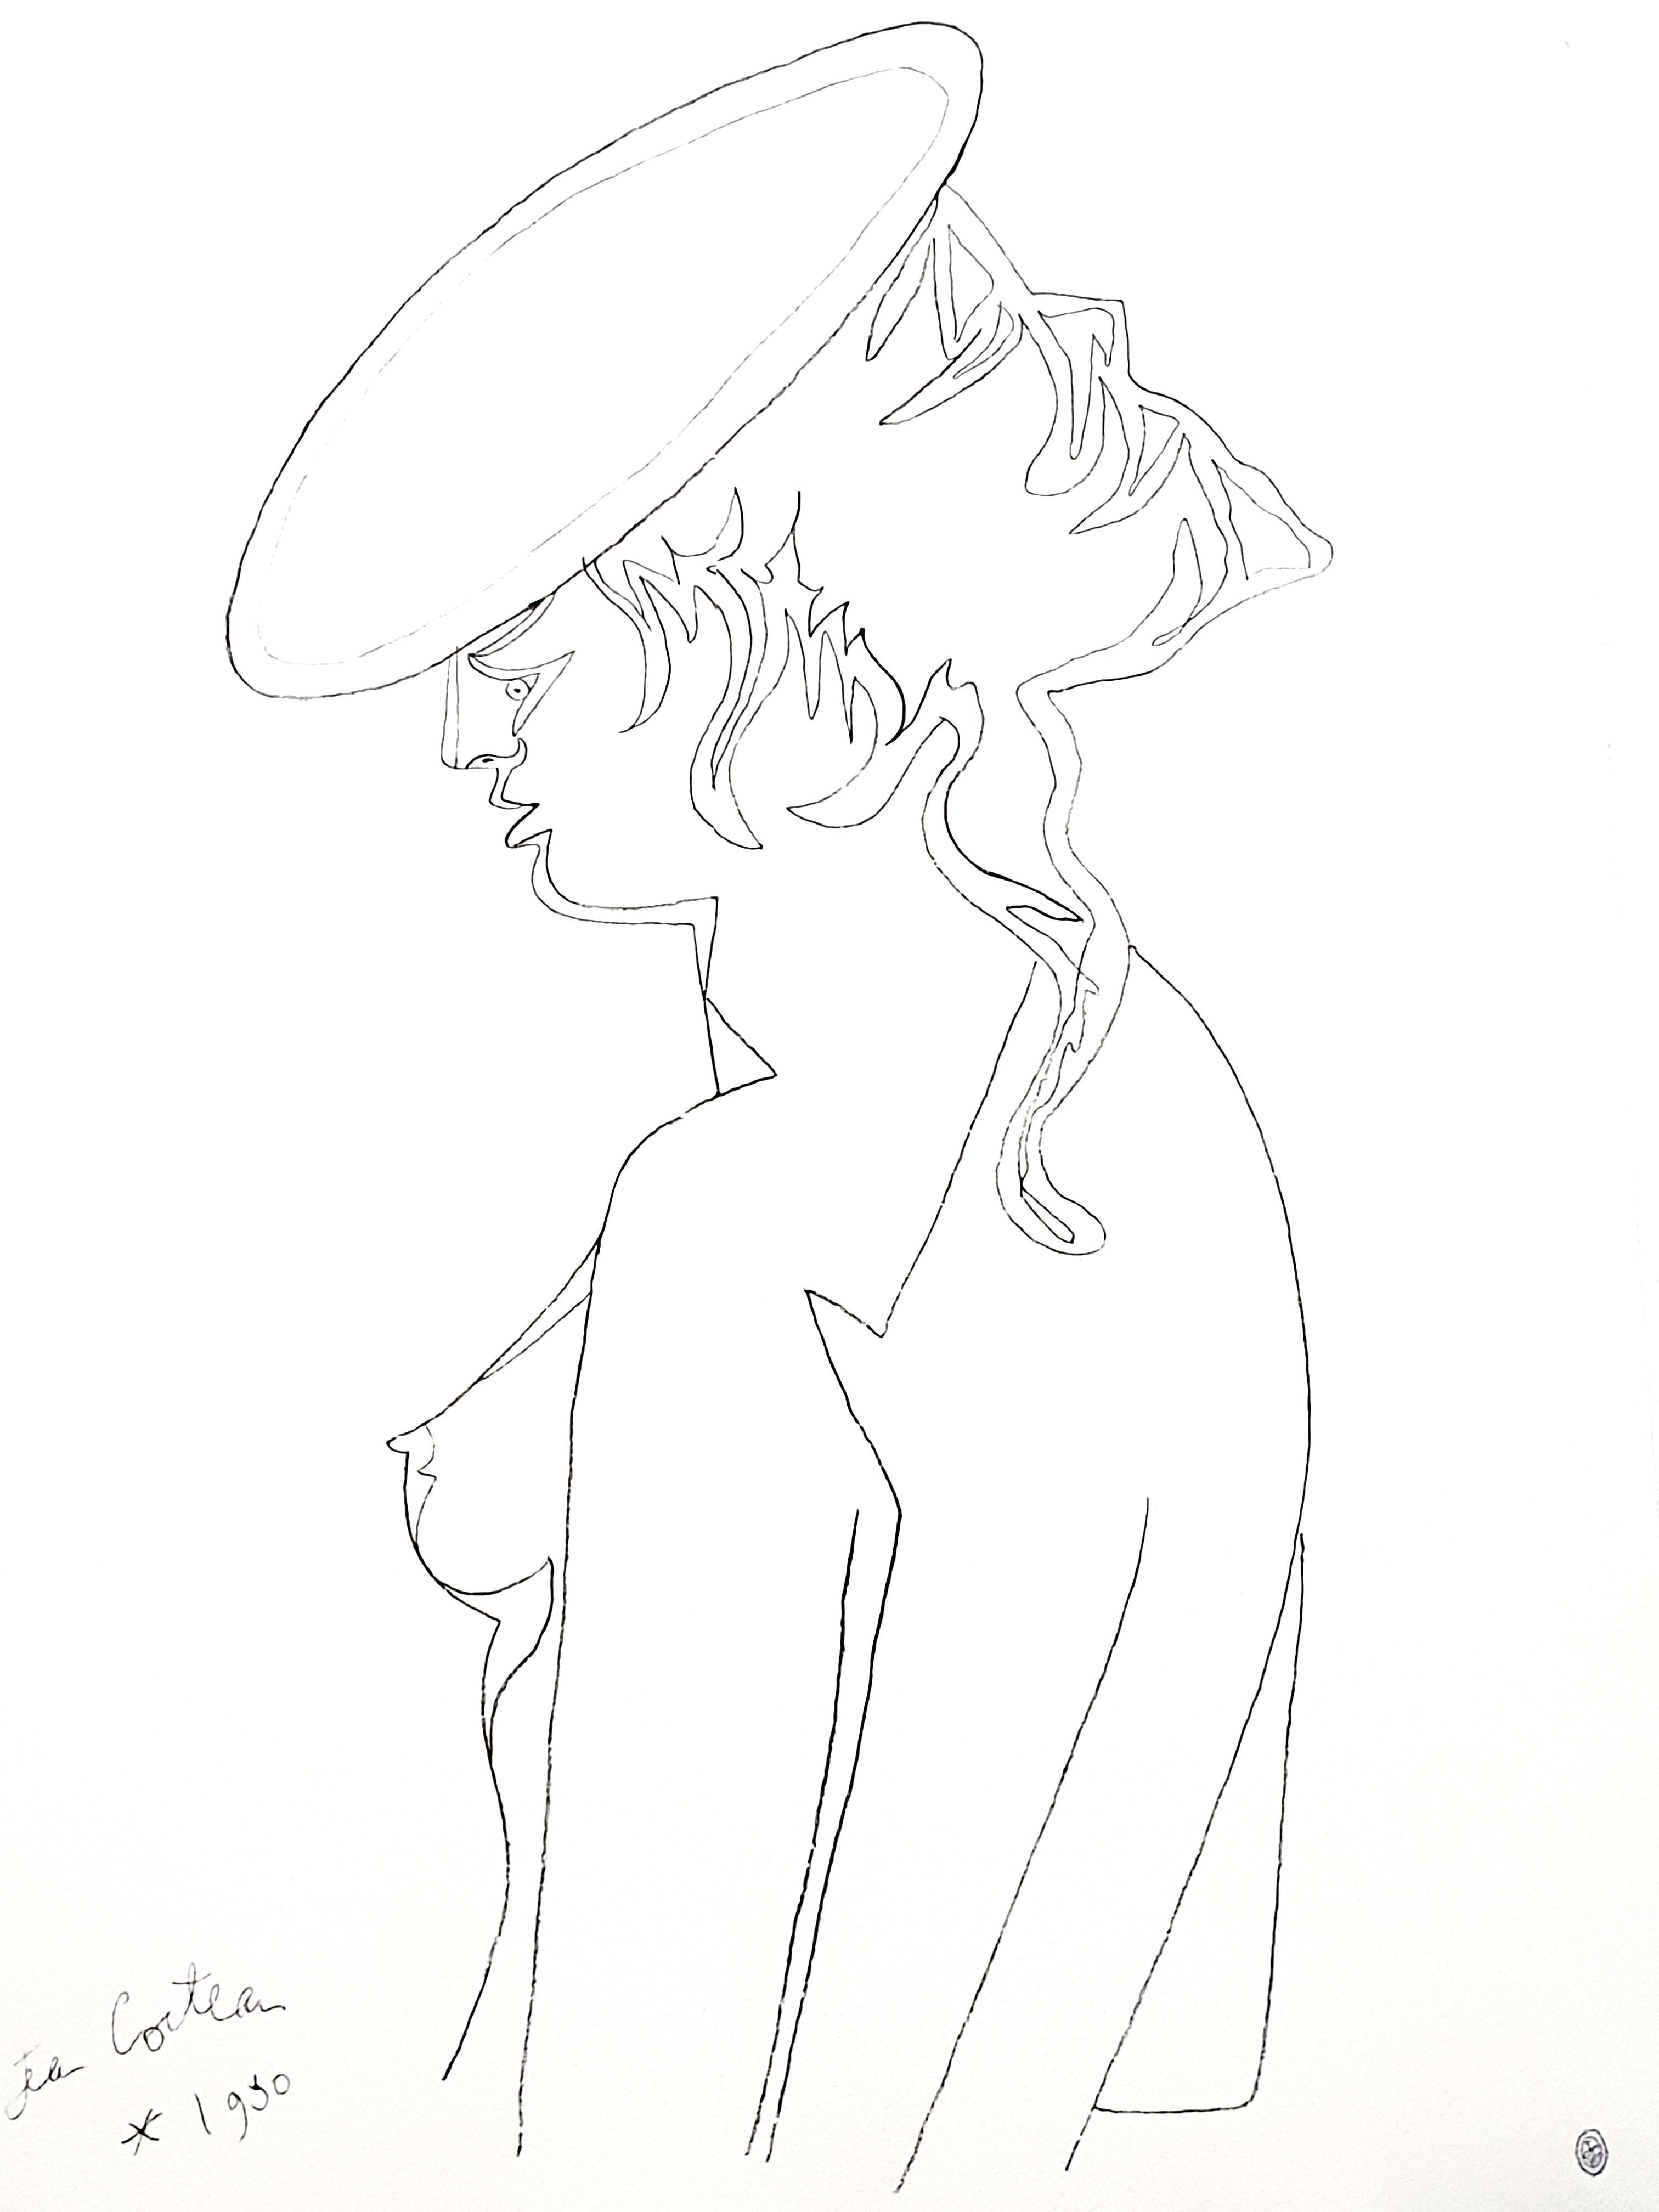 Original-Lithographie von Jean Cocteau
Titel: Profil
In der Platte signiert
Abmessungen: 65 x 44 cm